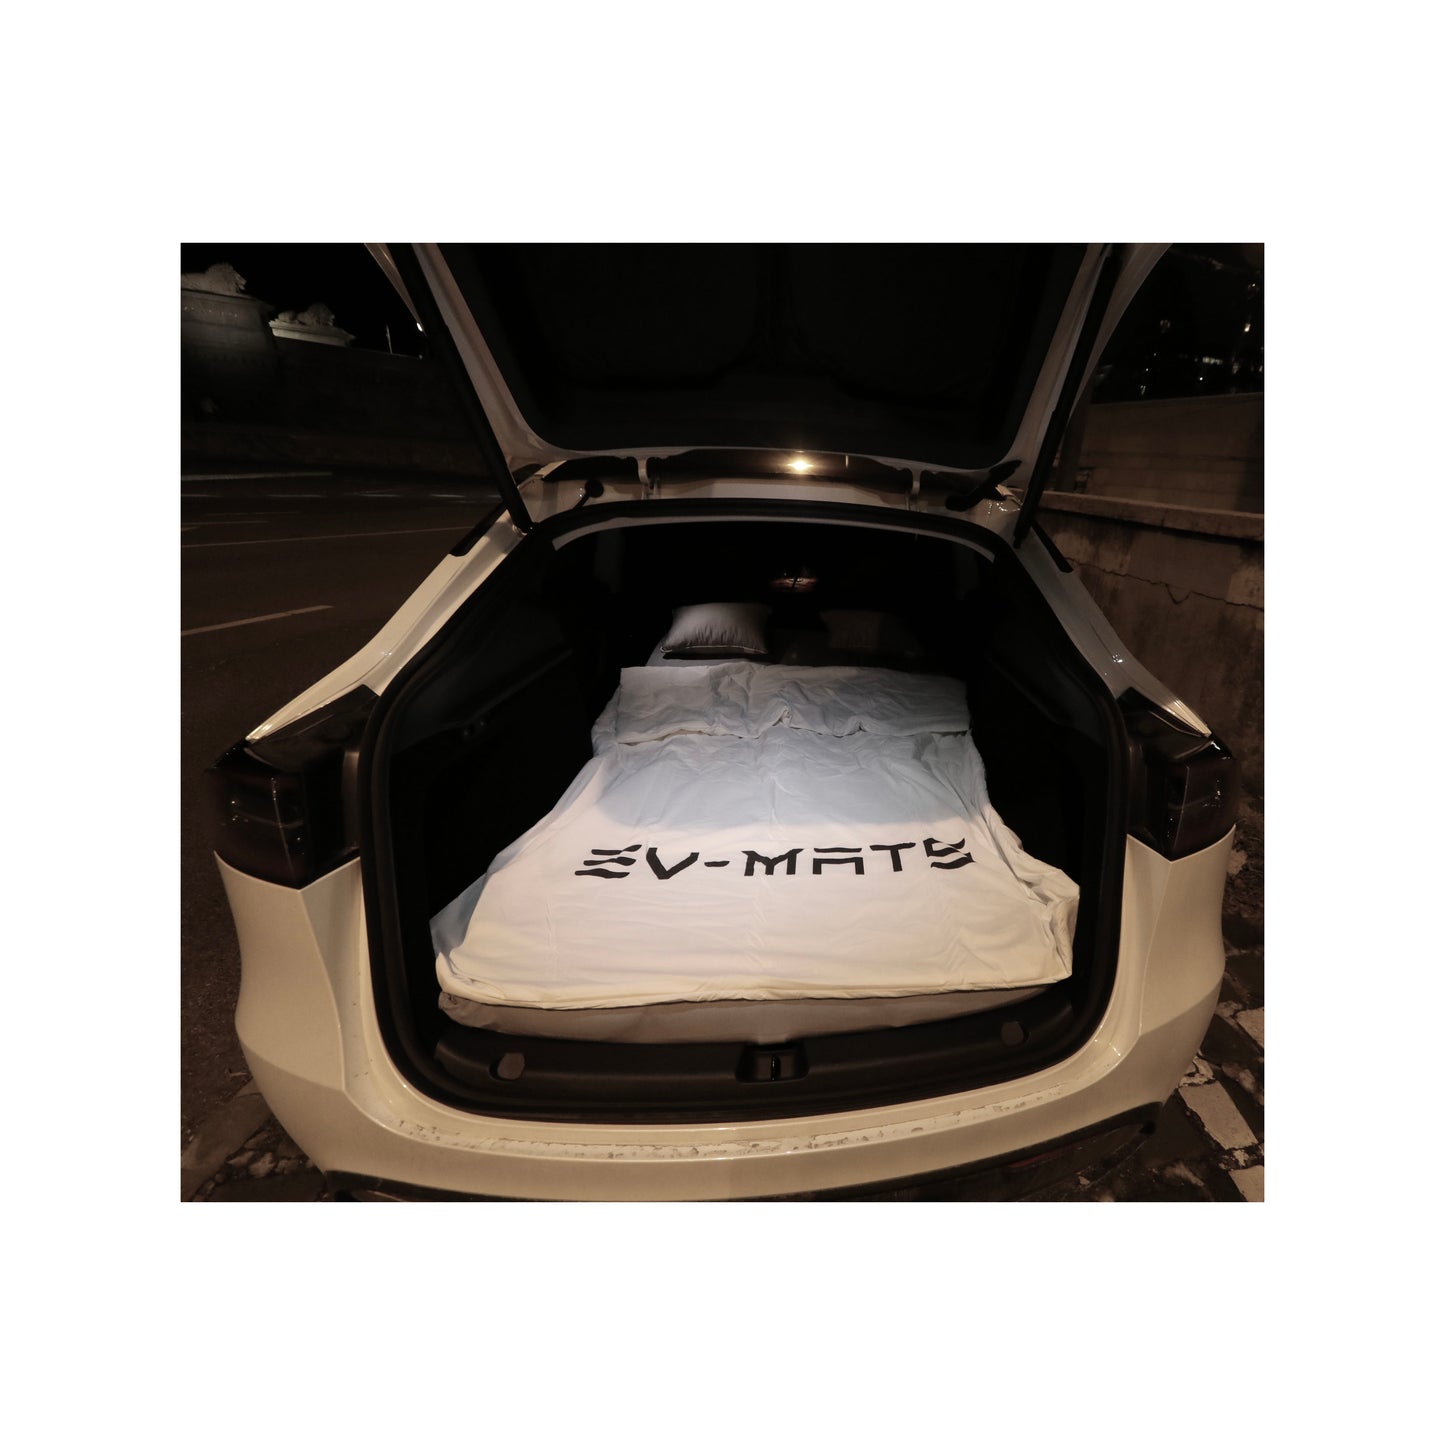 EV-MATS Basic CAMP SET voor Tesla Model Y omvat de Tesla-matras, de waterdichte tas die past in de achterbak van de Tesla Model Y, een laken, een dekbed, 2 kussens en een kussensloop